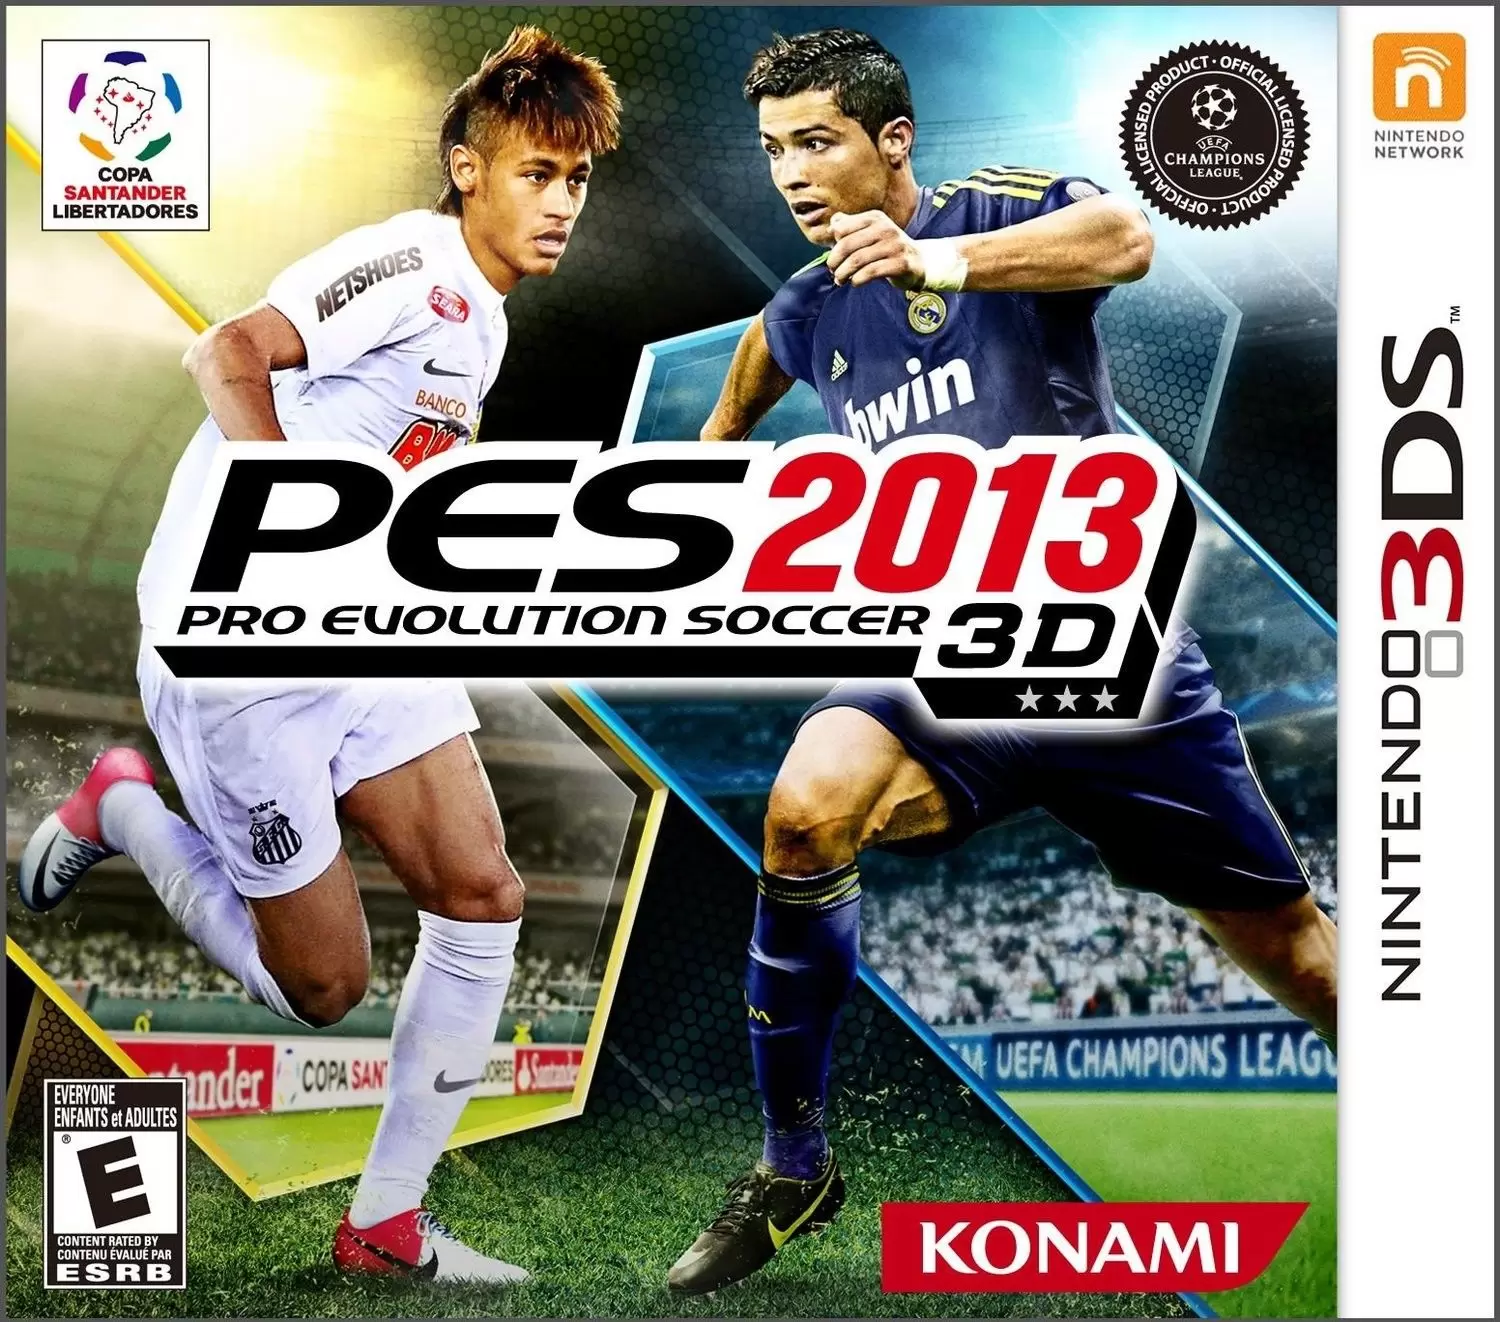 Nintendo 2DS / 3DS Games - Pro Evolution Soccer 2013 3D